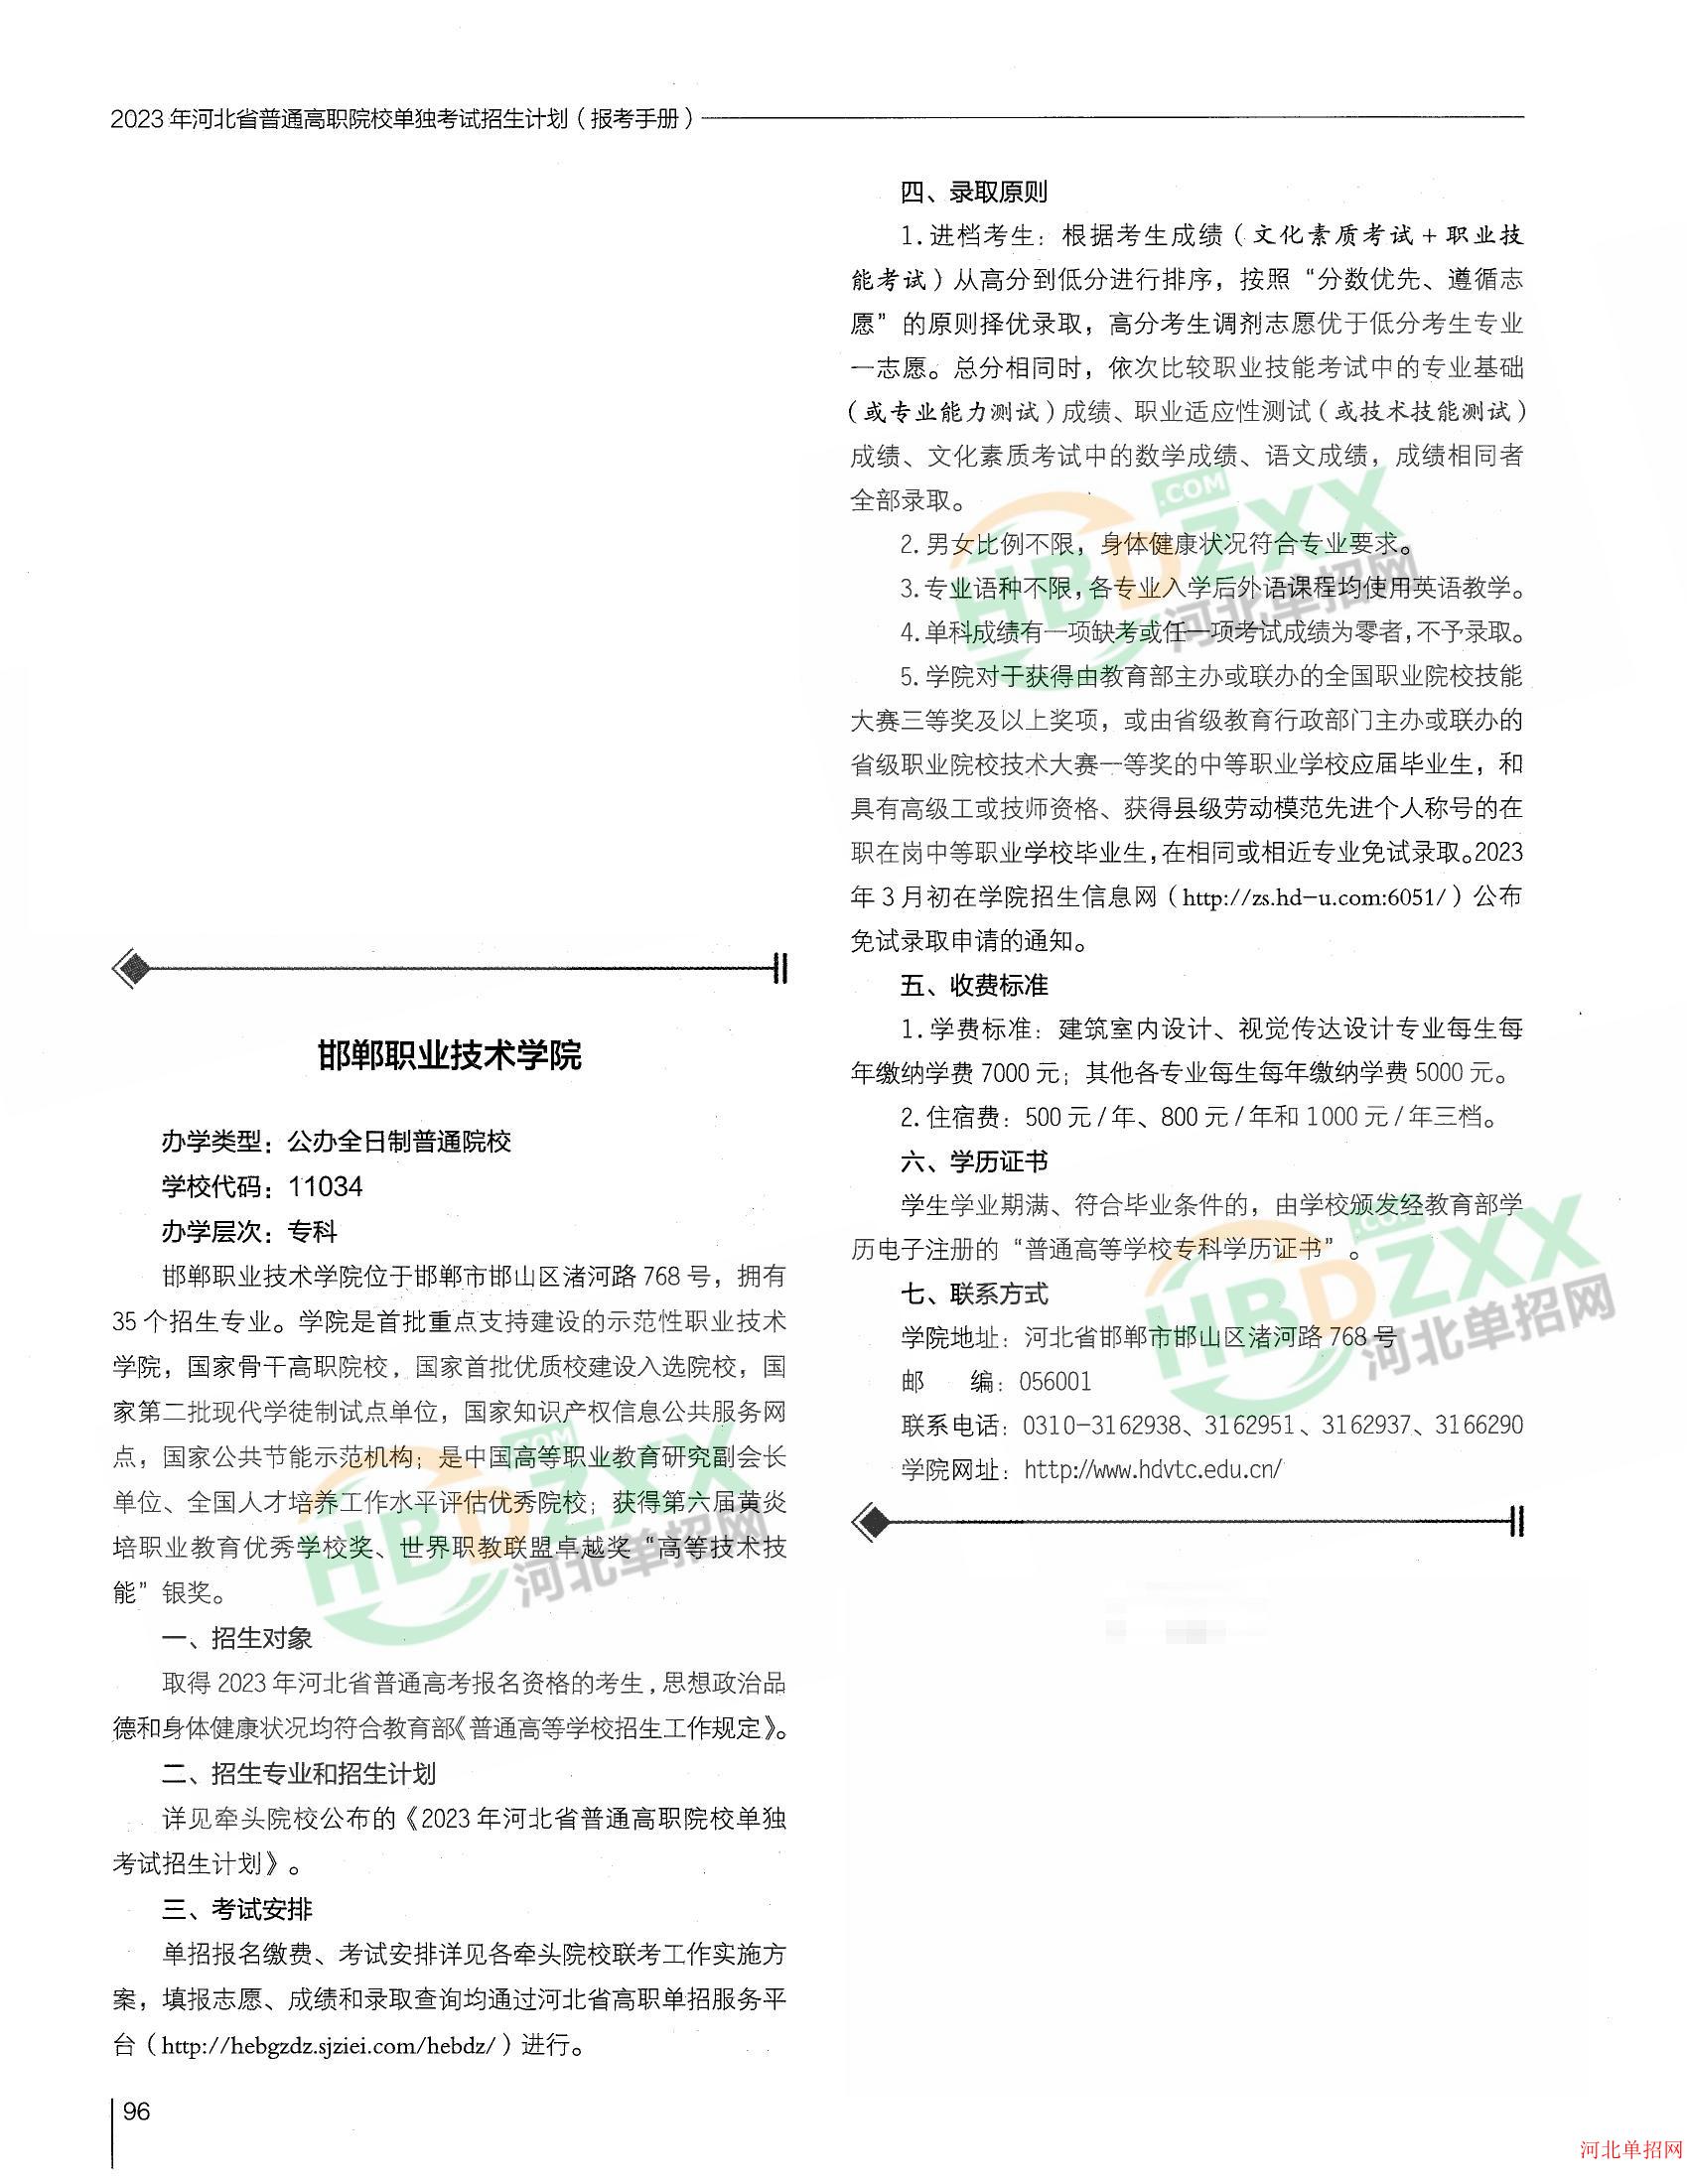 邯郸职业技术学院2023年单招招生简章 图1